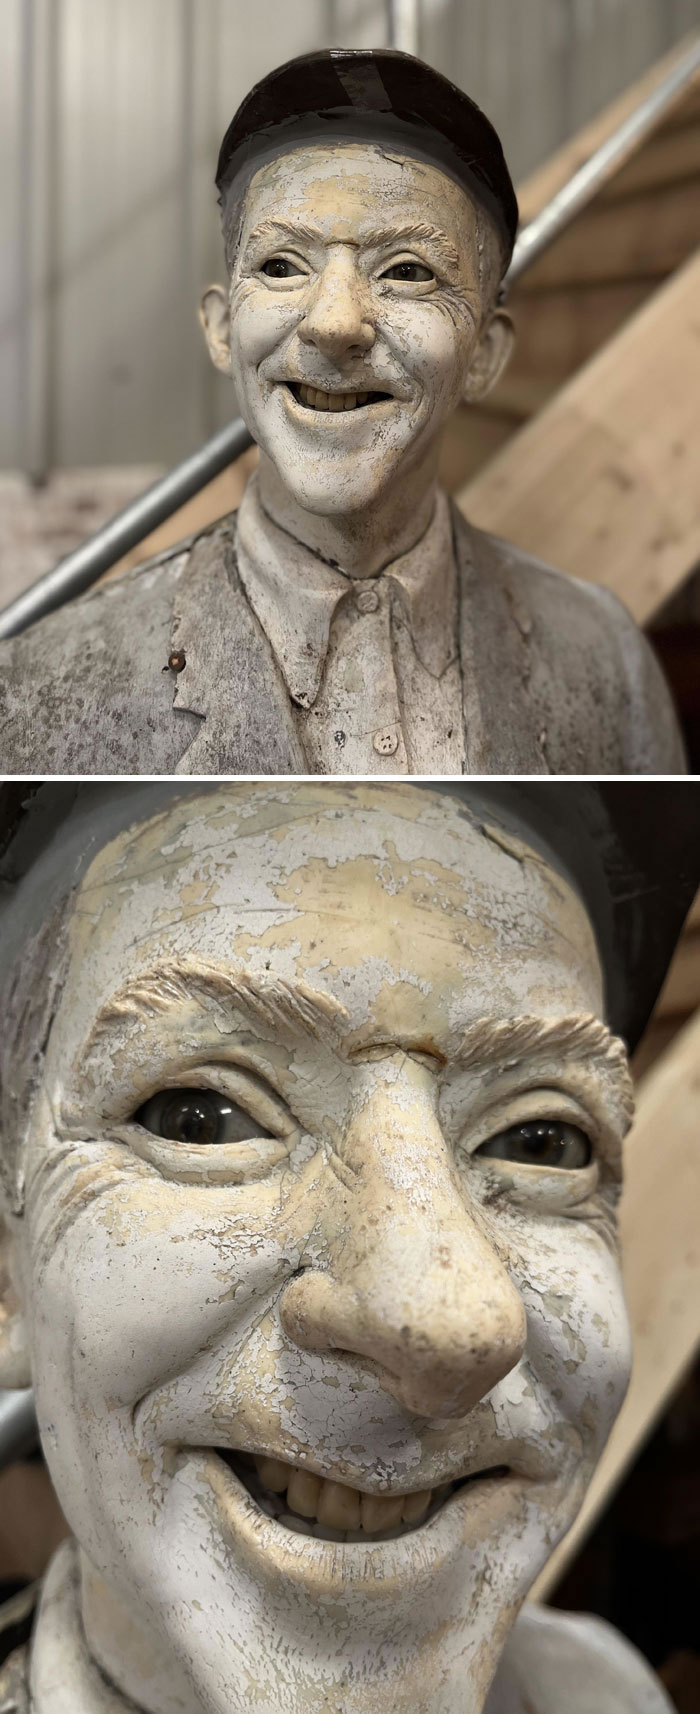 Les sculptures les plus surprenantes trouvées en public